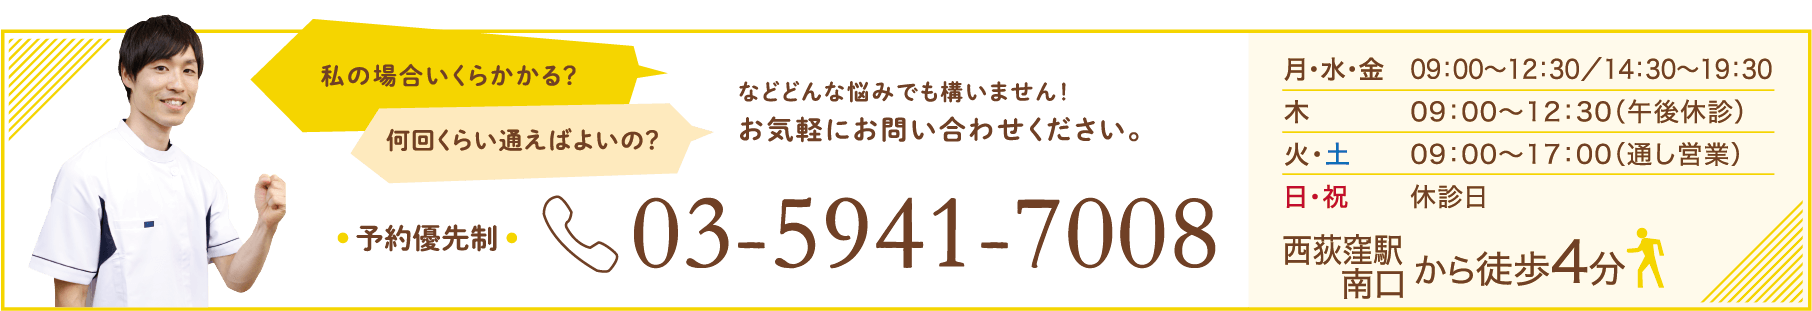 03-6454-7090